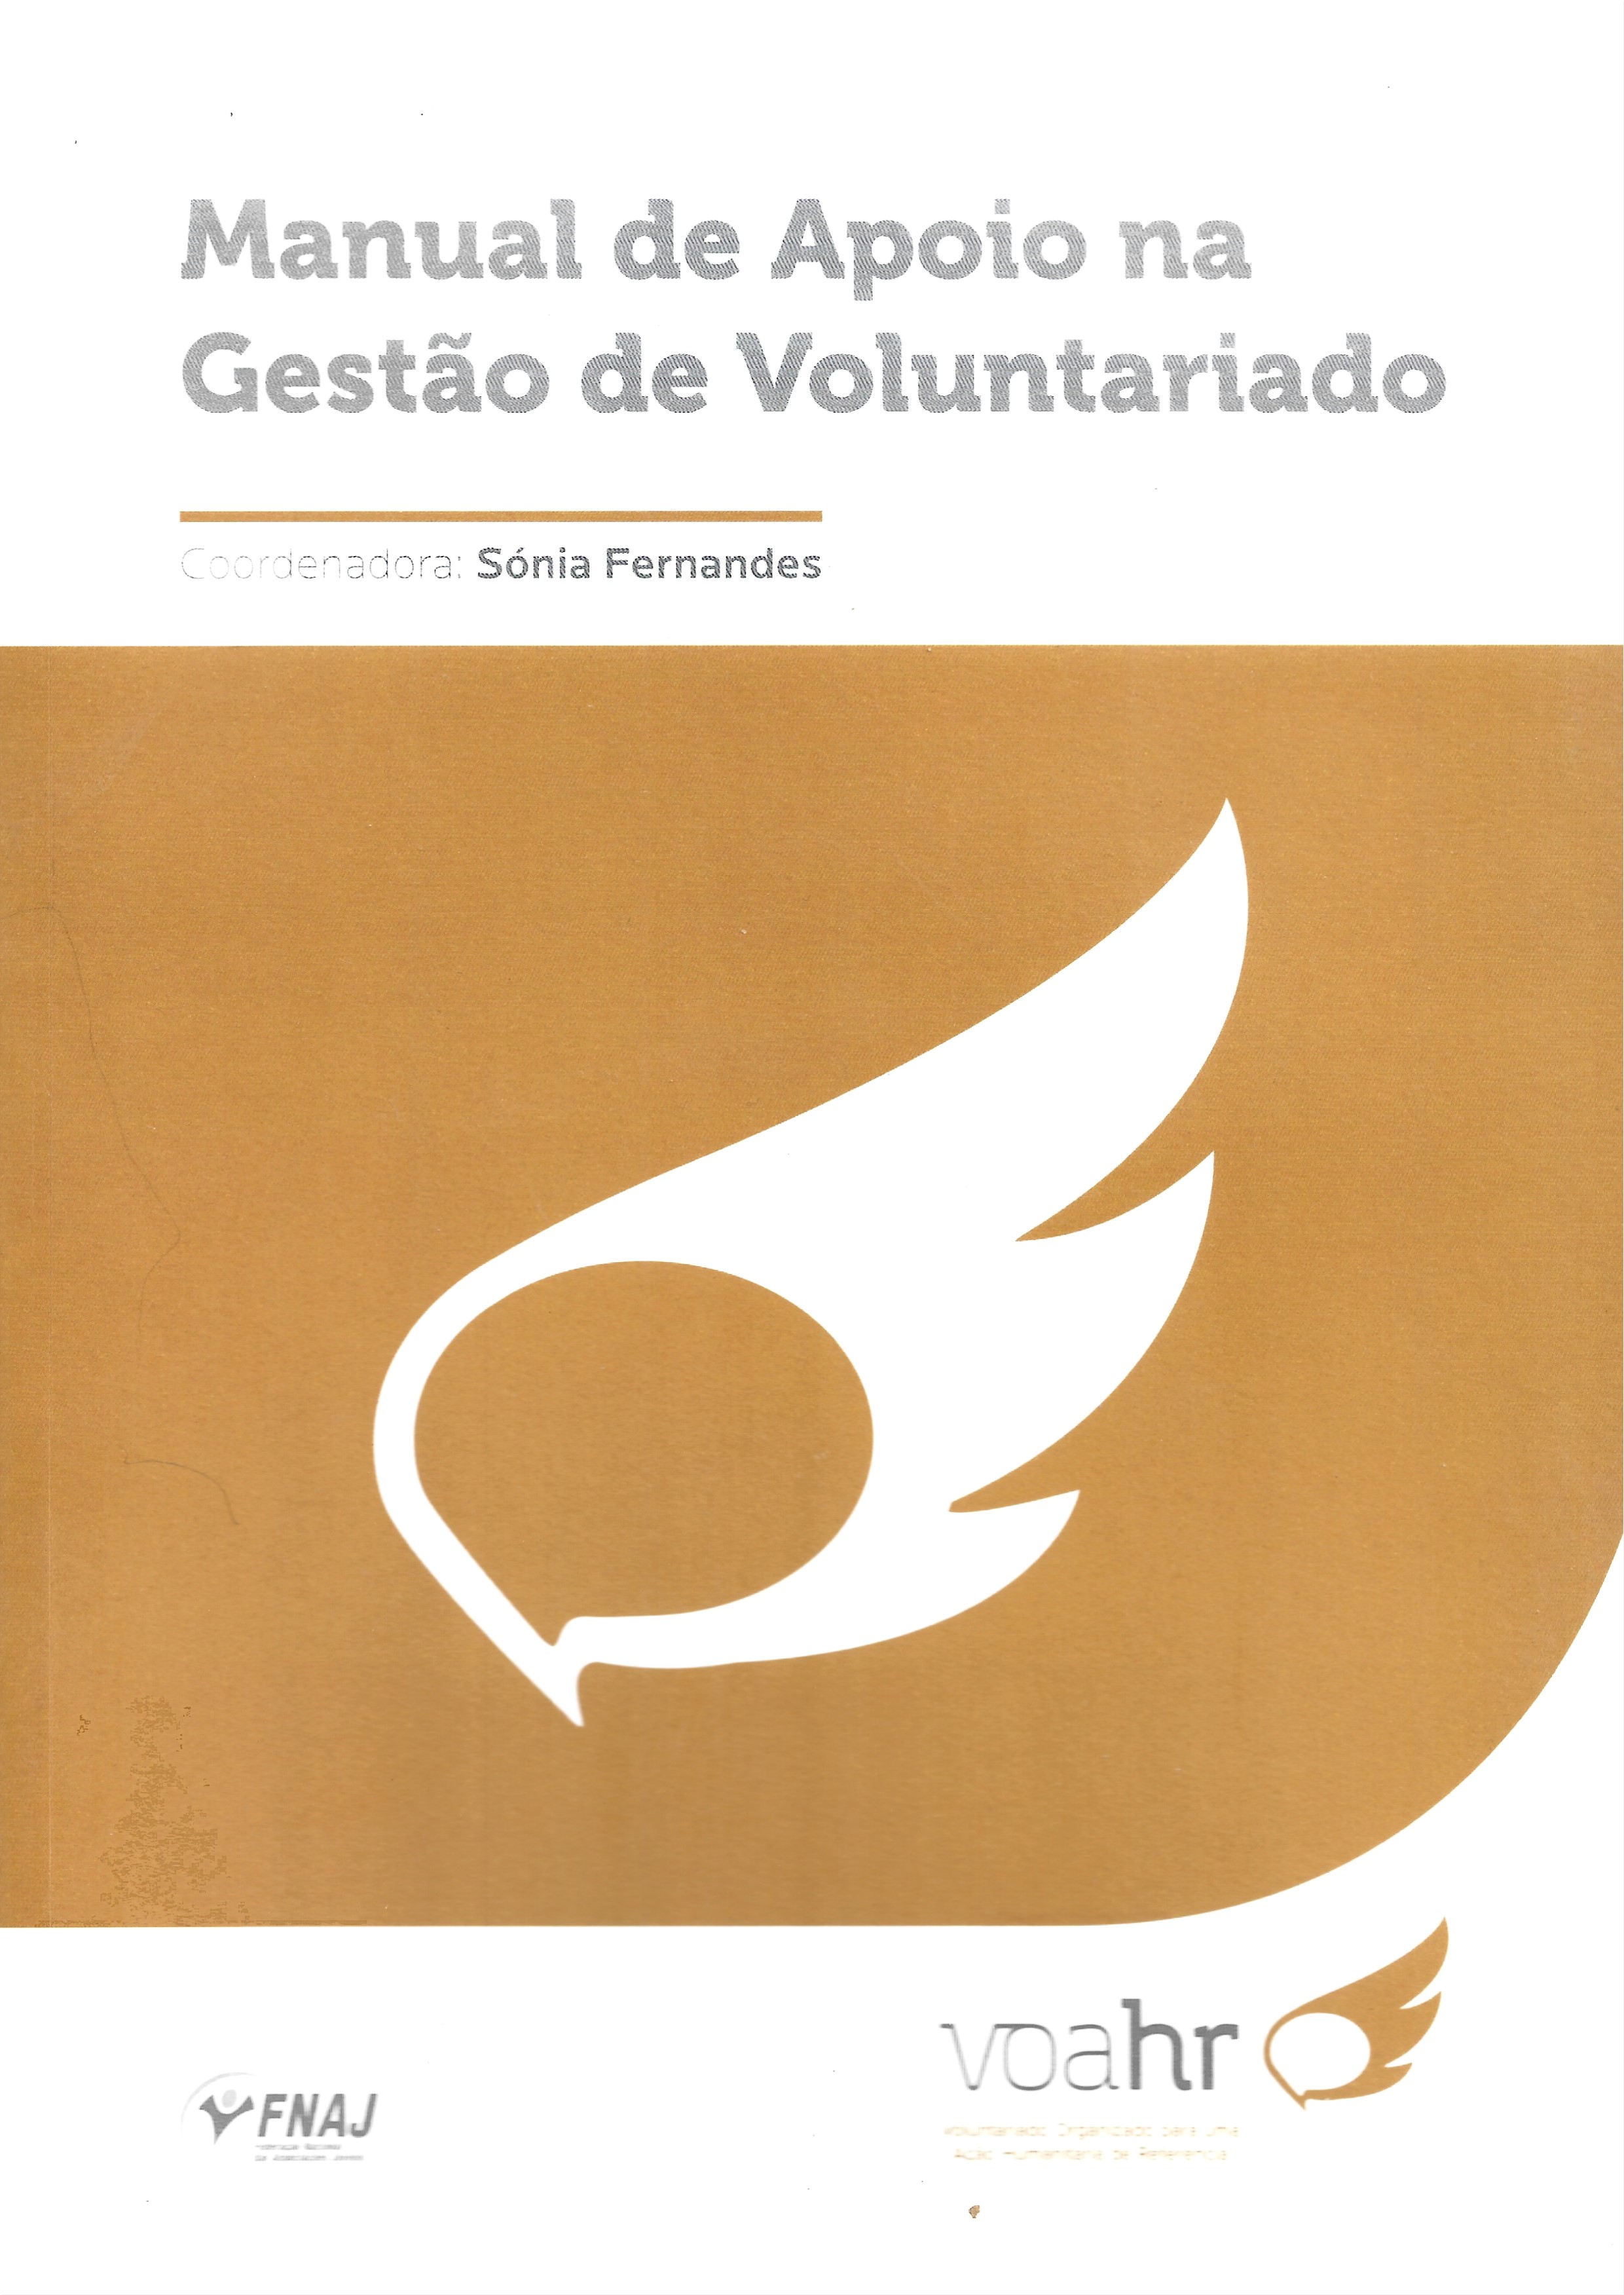 Infografia de uma asa e lettering «Manual de Apoio na Gestão de Voluntariado